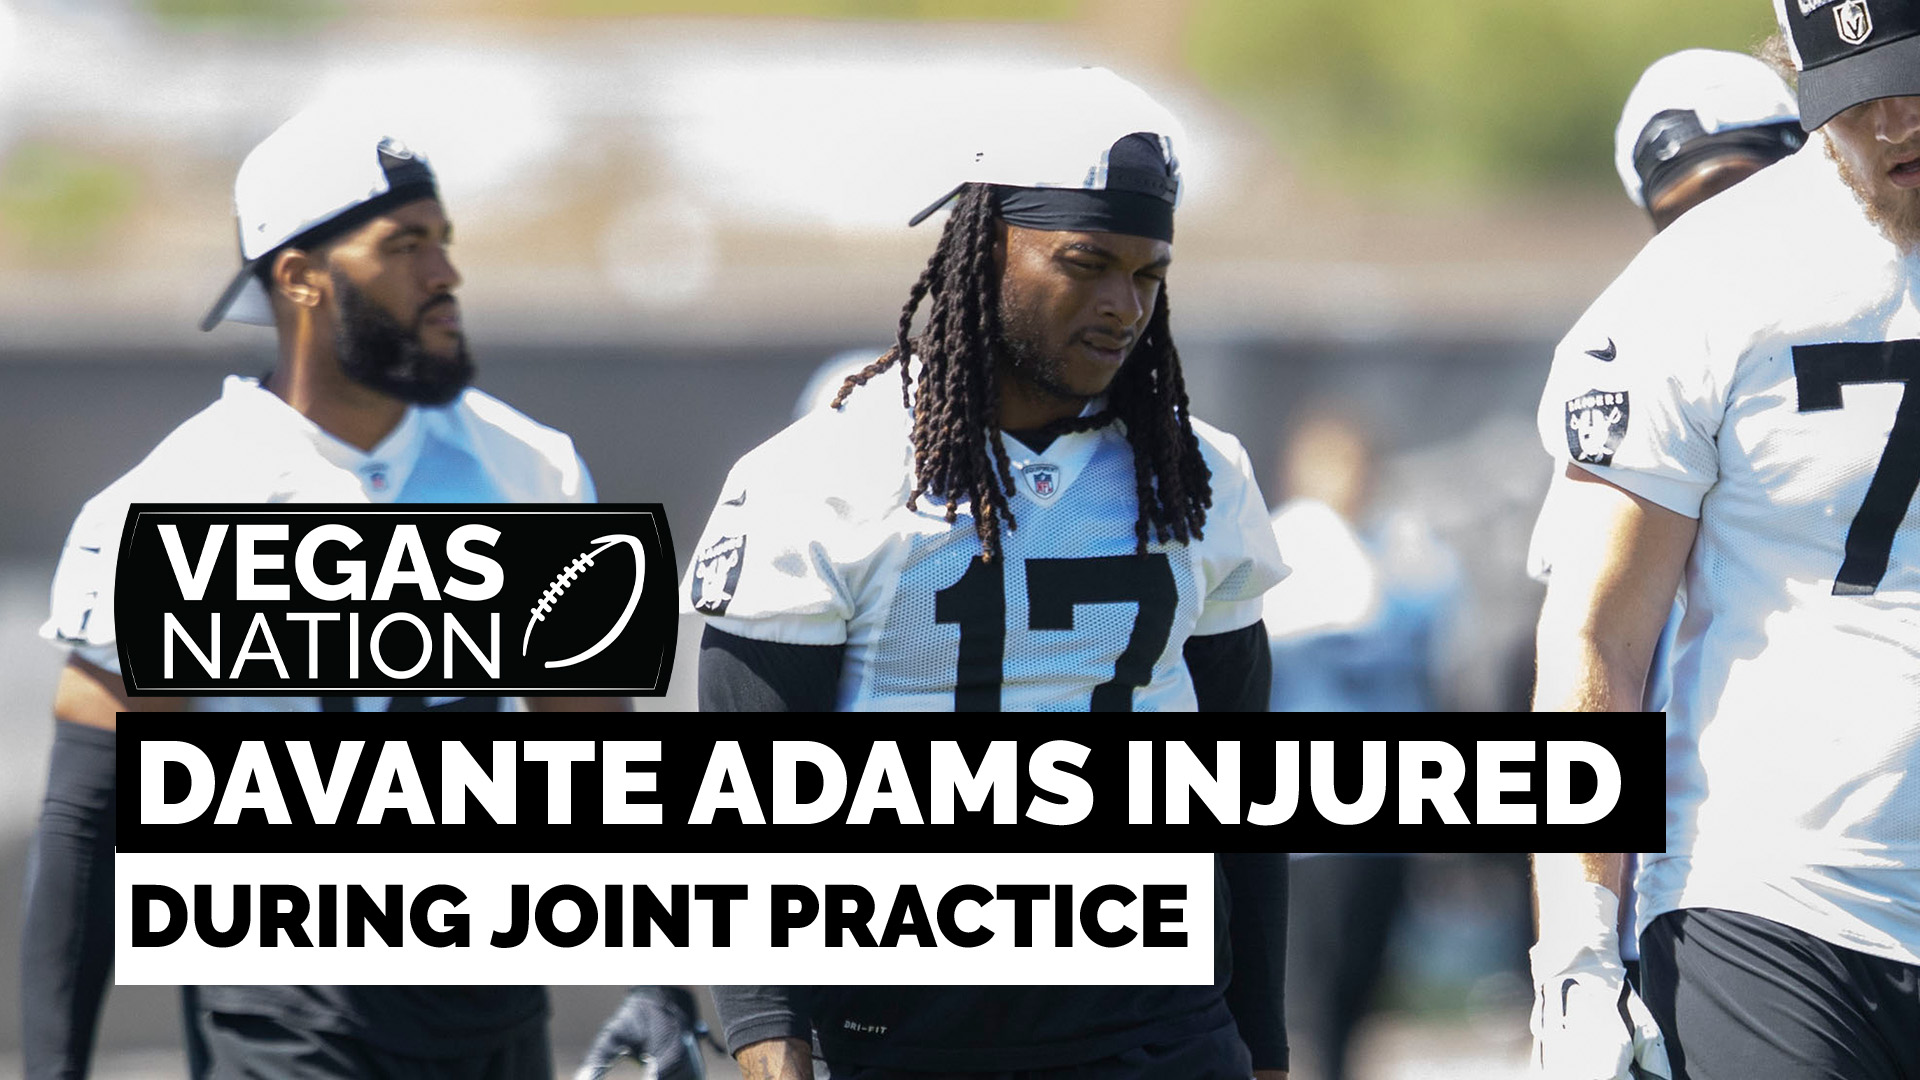 Davante Adams hurt during joint practice